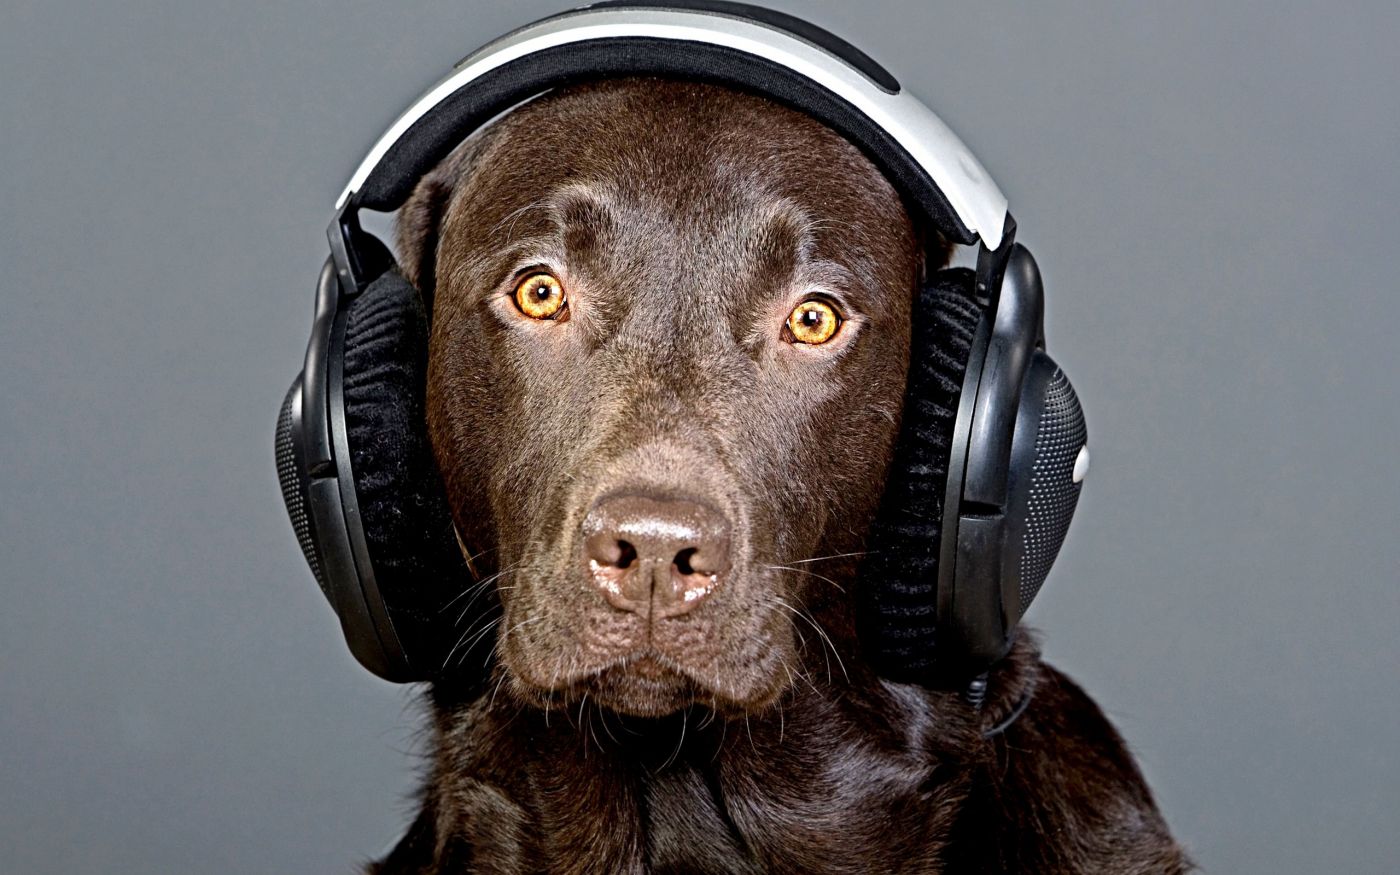 狗耳机听的音乐 库存照片. 图片 包括有 声音, 快乐, 幽默, 放置, 一个, 倾听, 大型猛犬, 空白 - 18555522